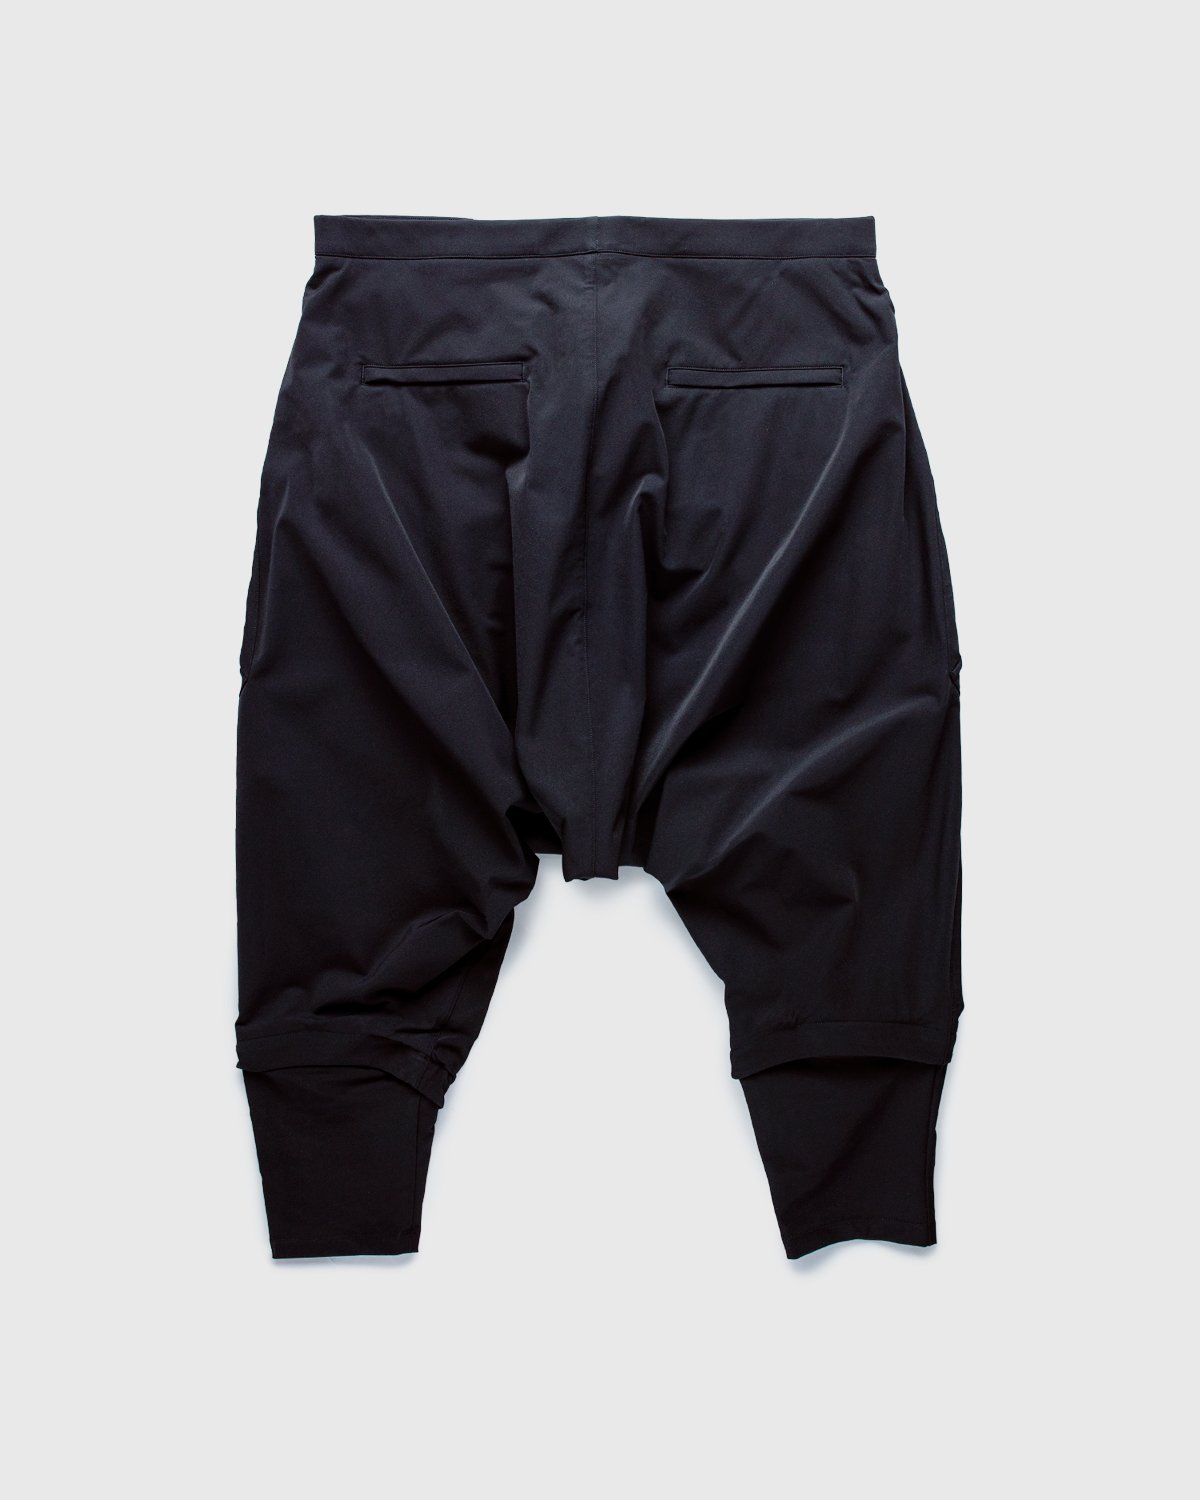 ACRONYM - P30A-DS Pants Black - Clothing - Black - Image 2